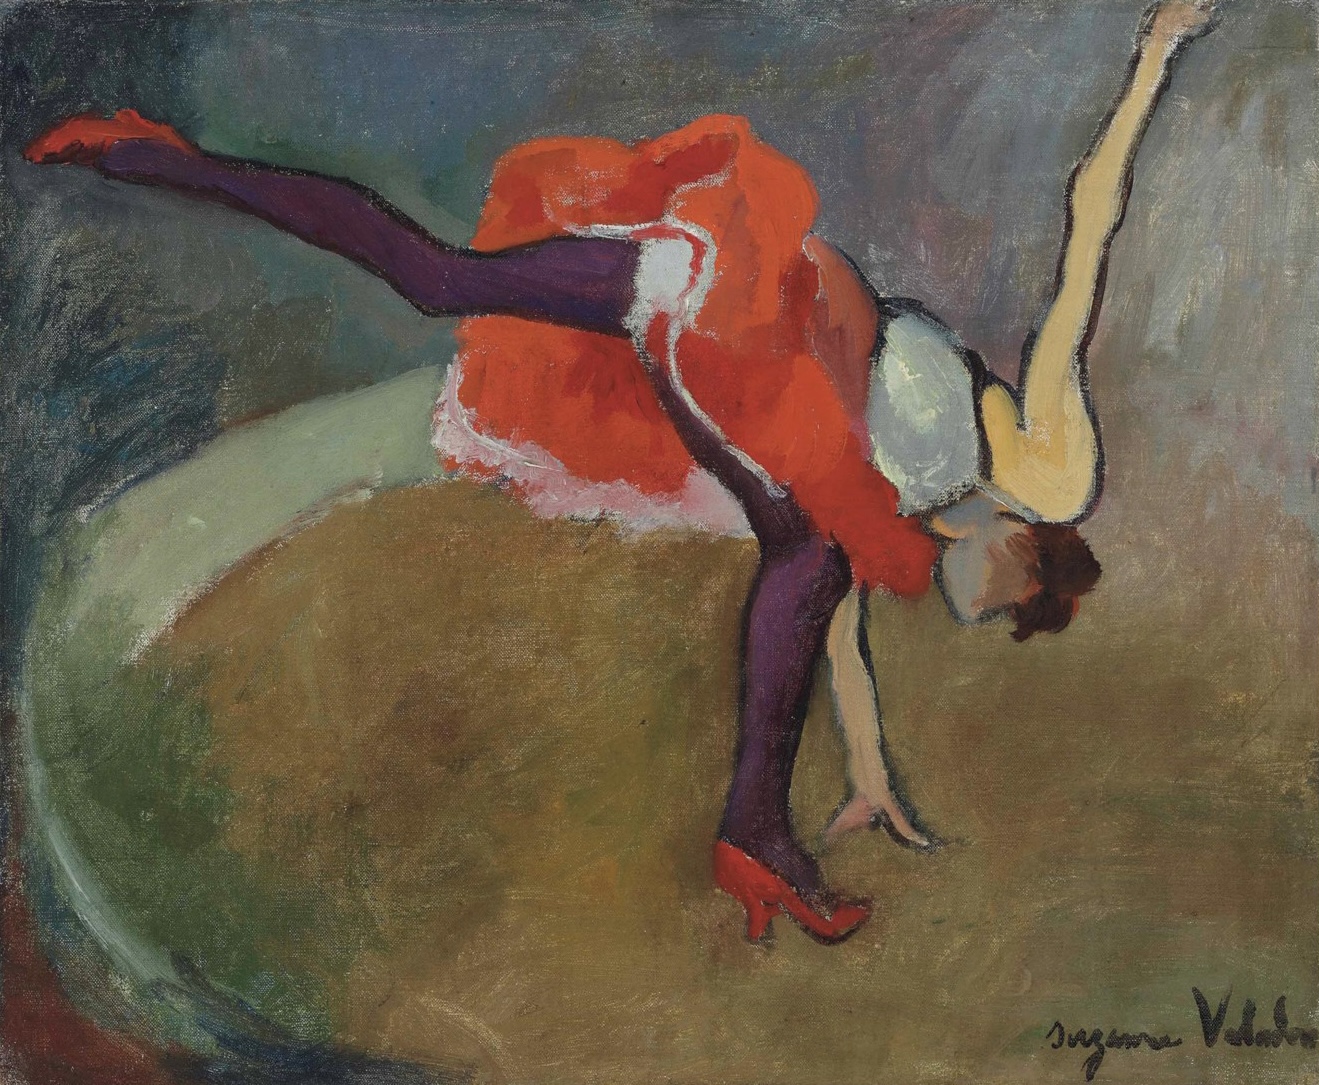 L'Acrobate ou La Roue by Suzanne Valadon - 1927 - 38 x 46,2 cm collection privée